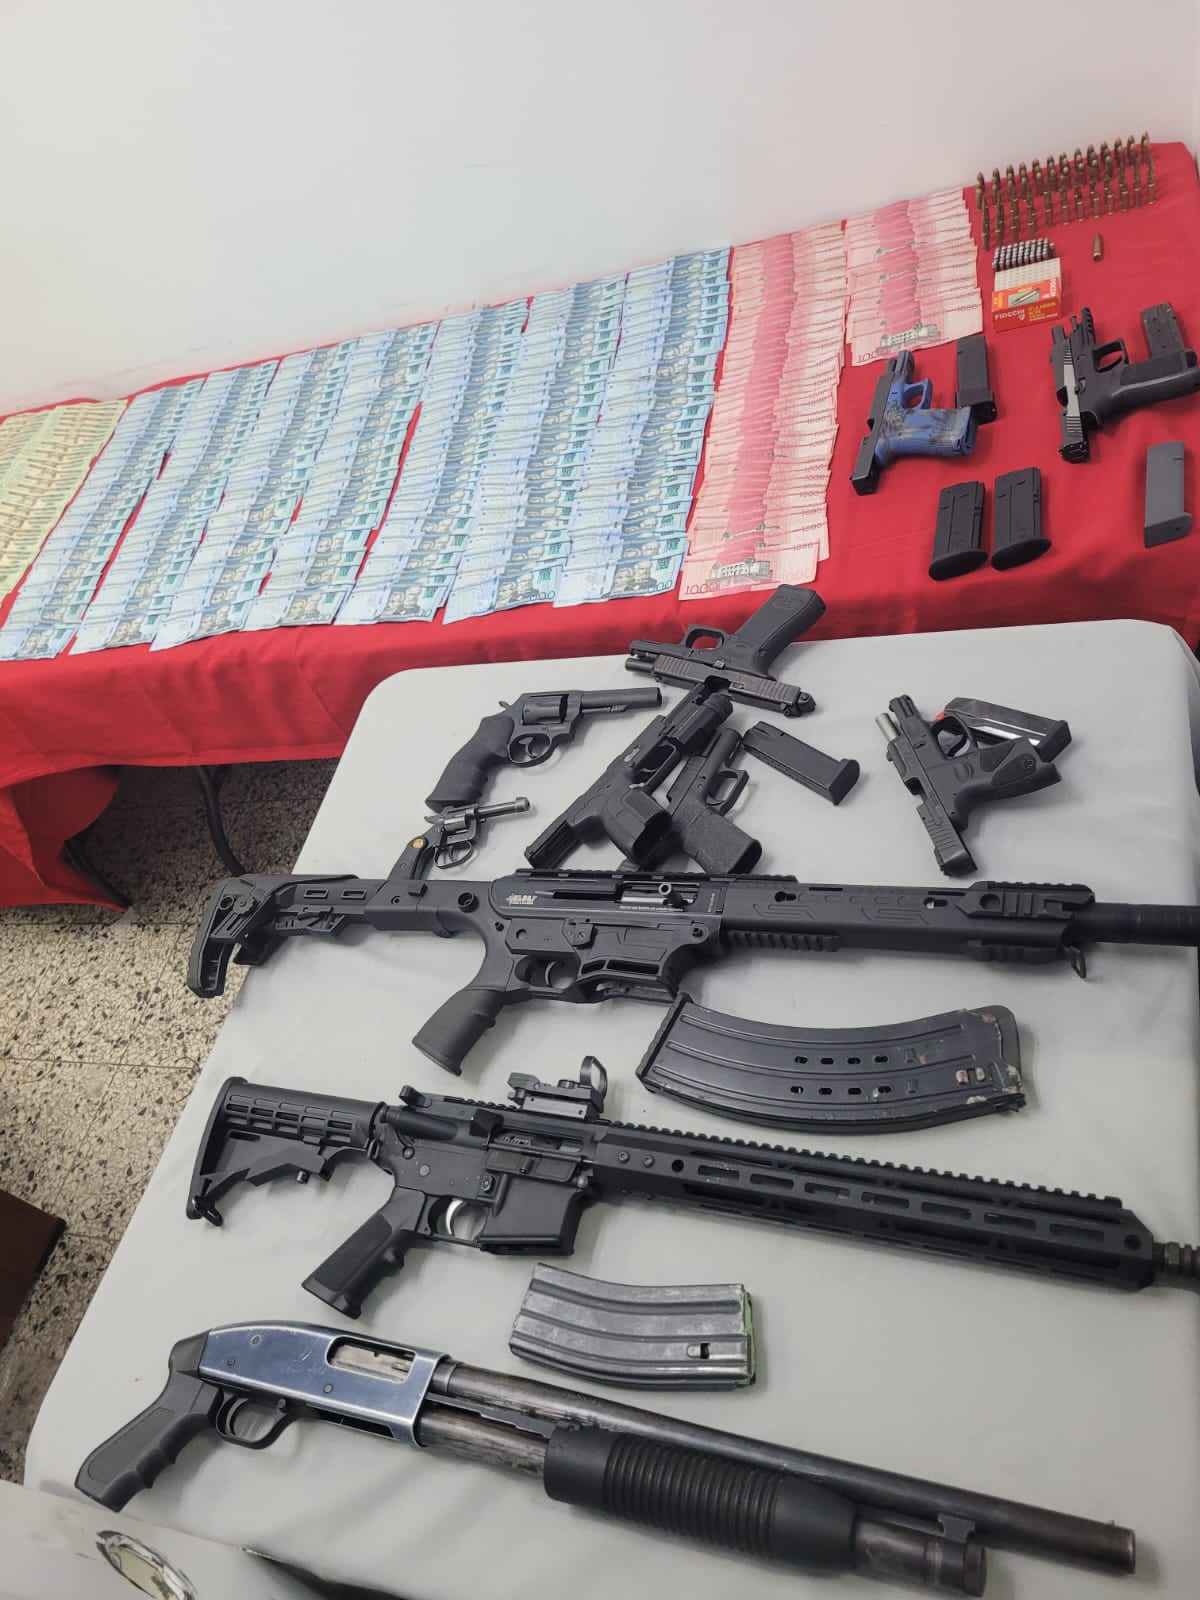 Autoridades desmantelan organización criminal en SDO; ocupan más RD$ 2 millones y armas de alto calibre